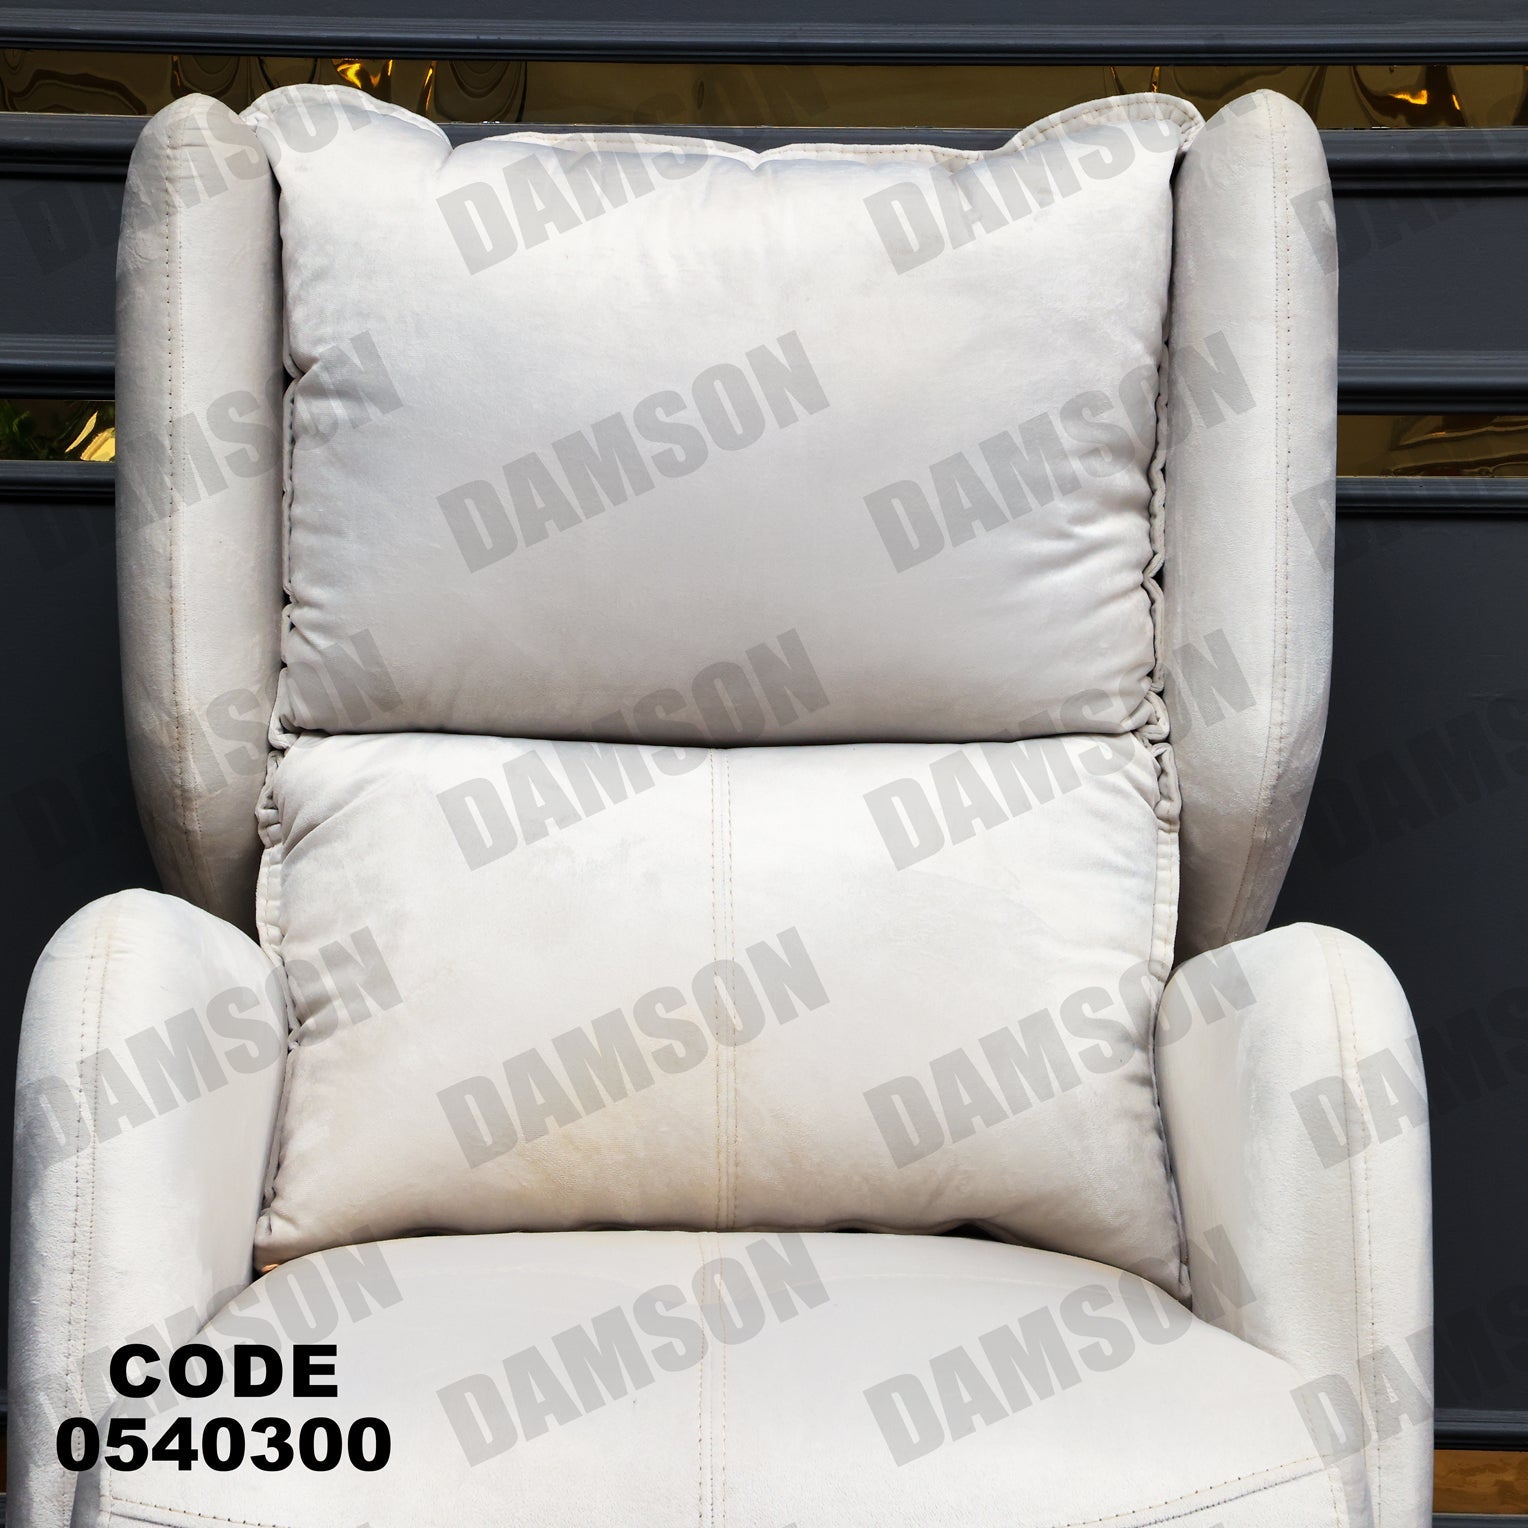 فوتية 1-403 - Damson Furnitureفوتية 1-403